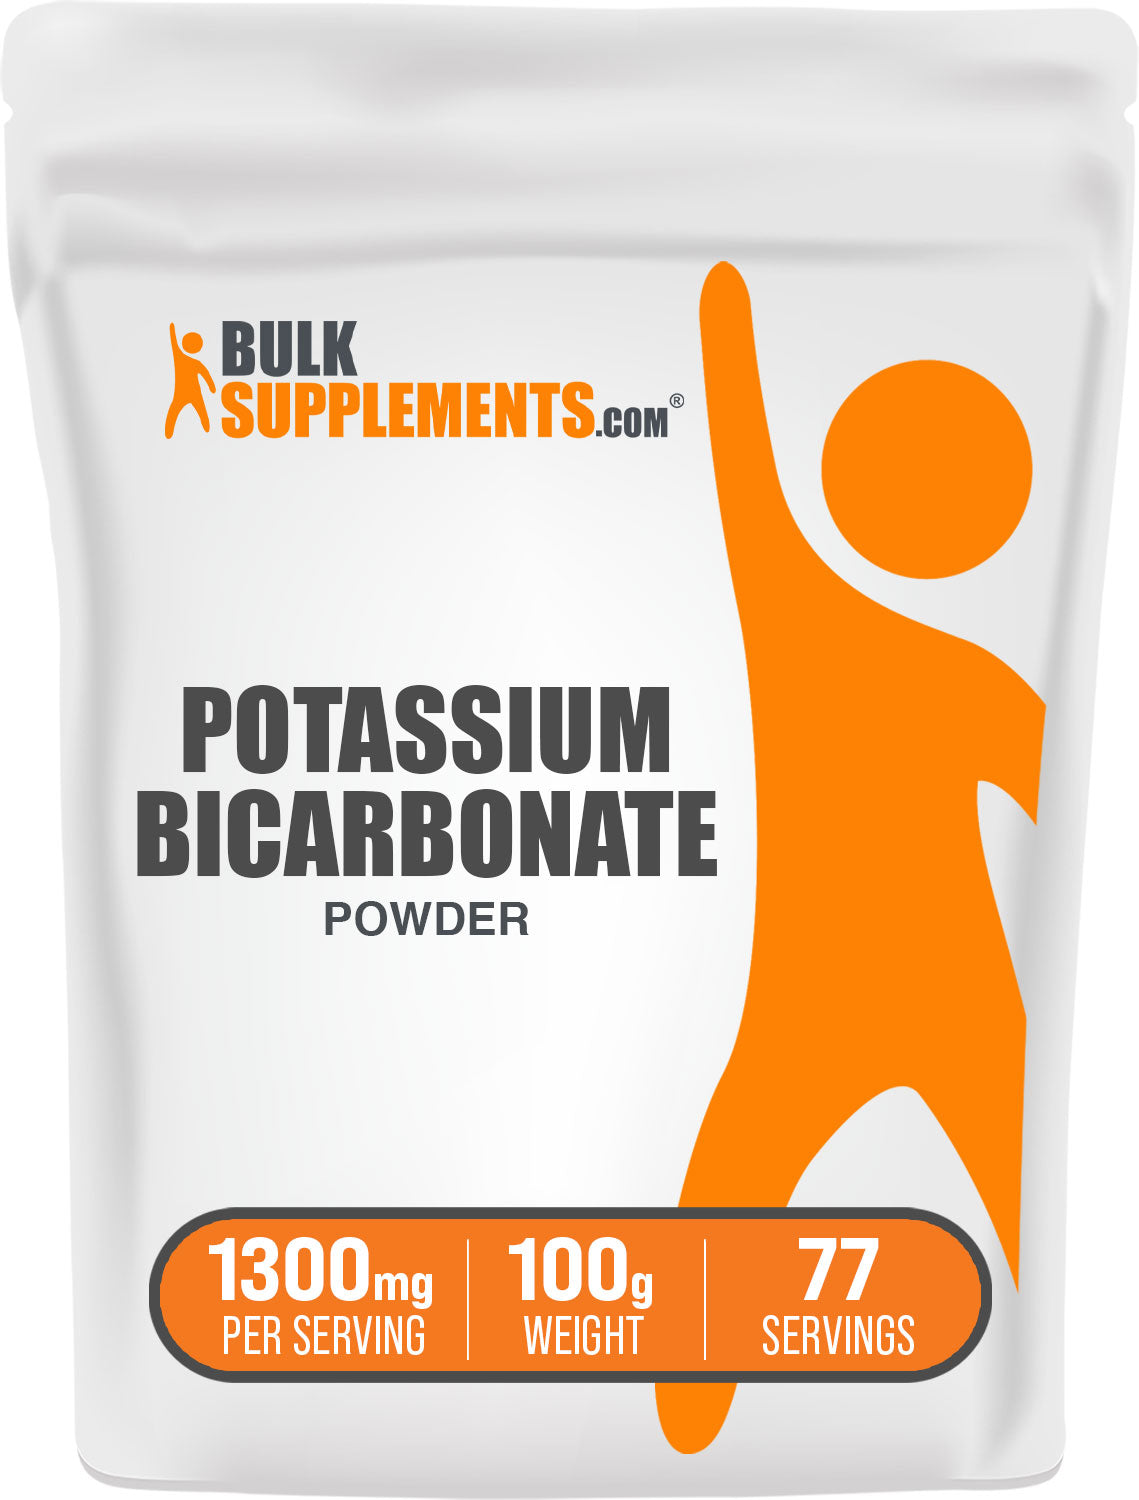 BulkSupplements.com Potassium Bicarbonate Powder 100g bag